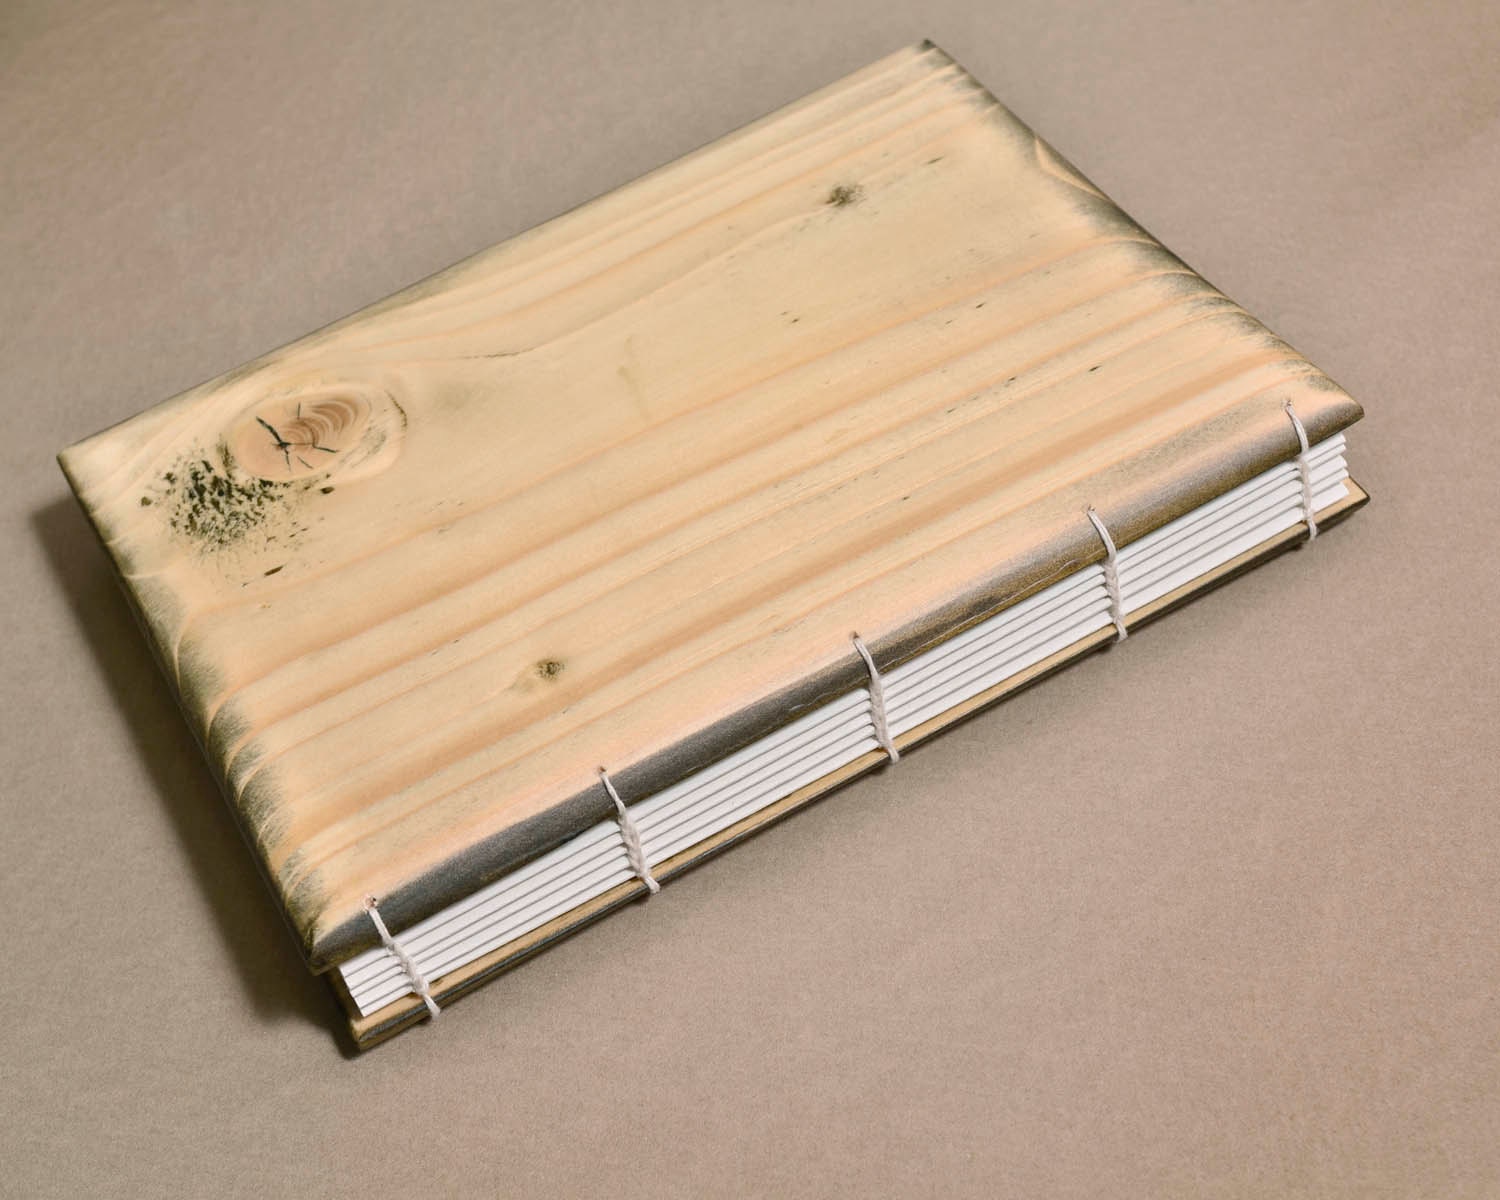 Wooden sketchbook